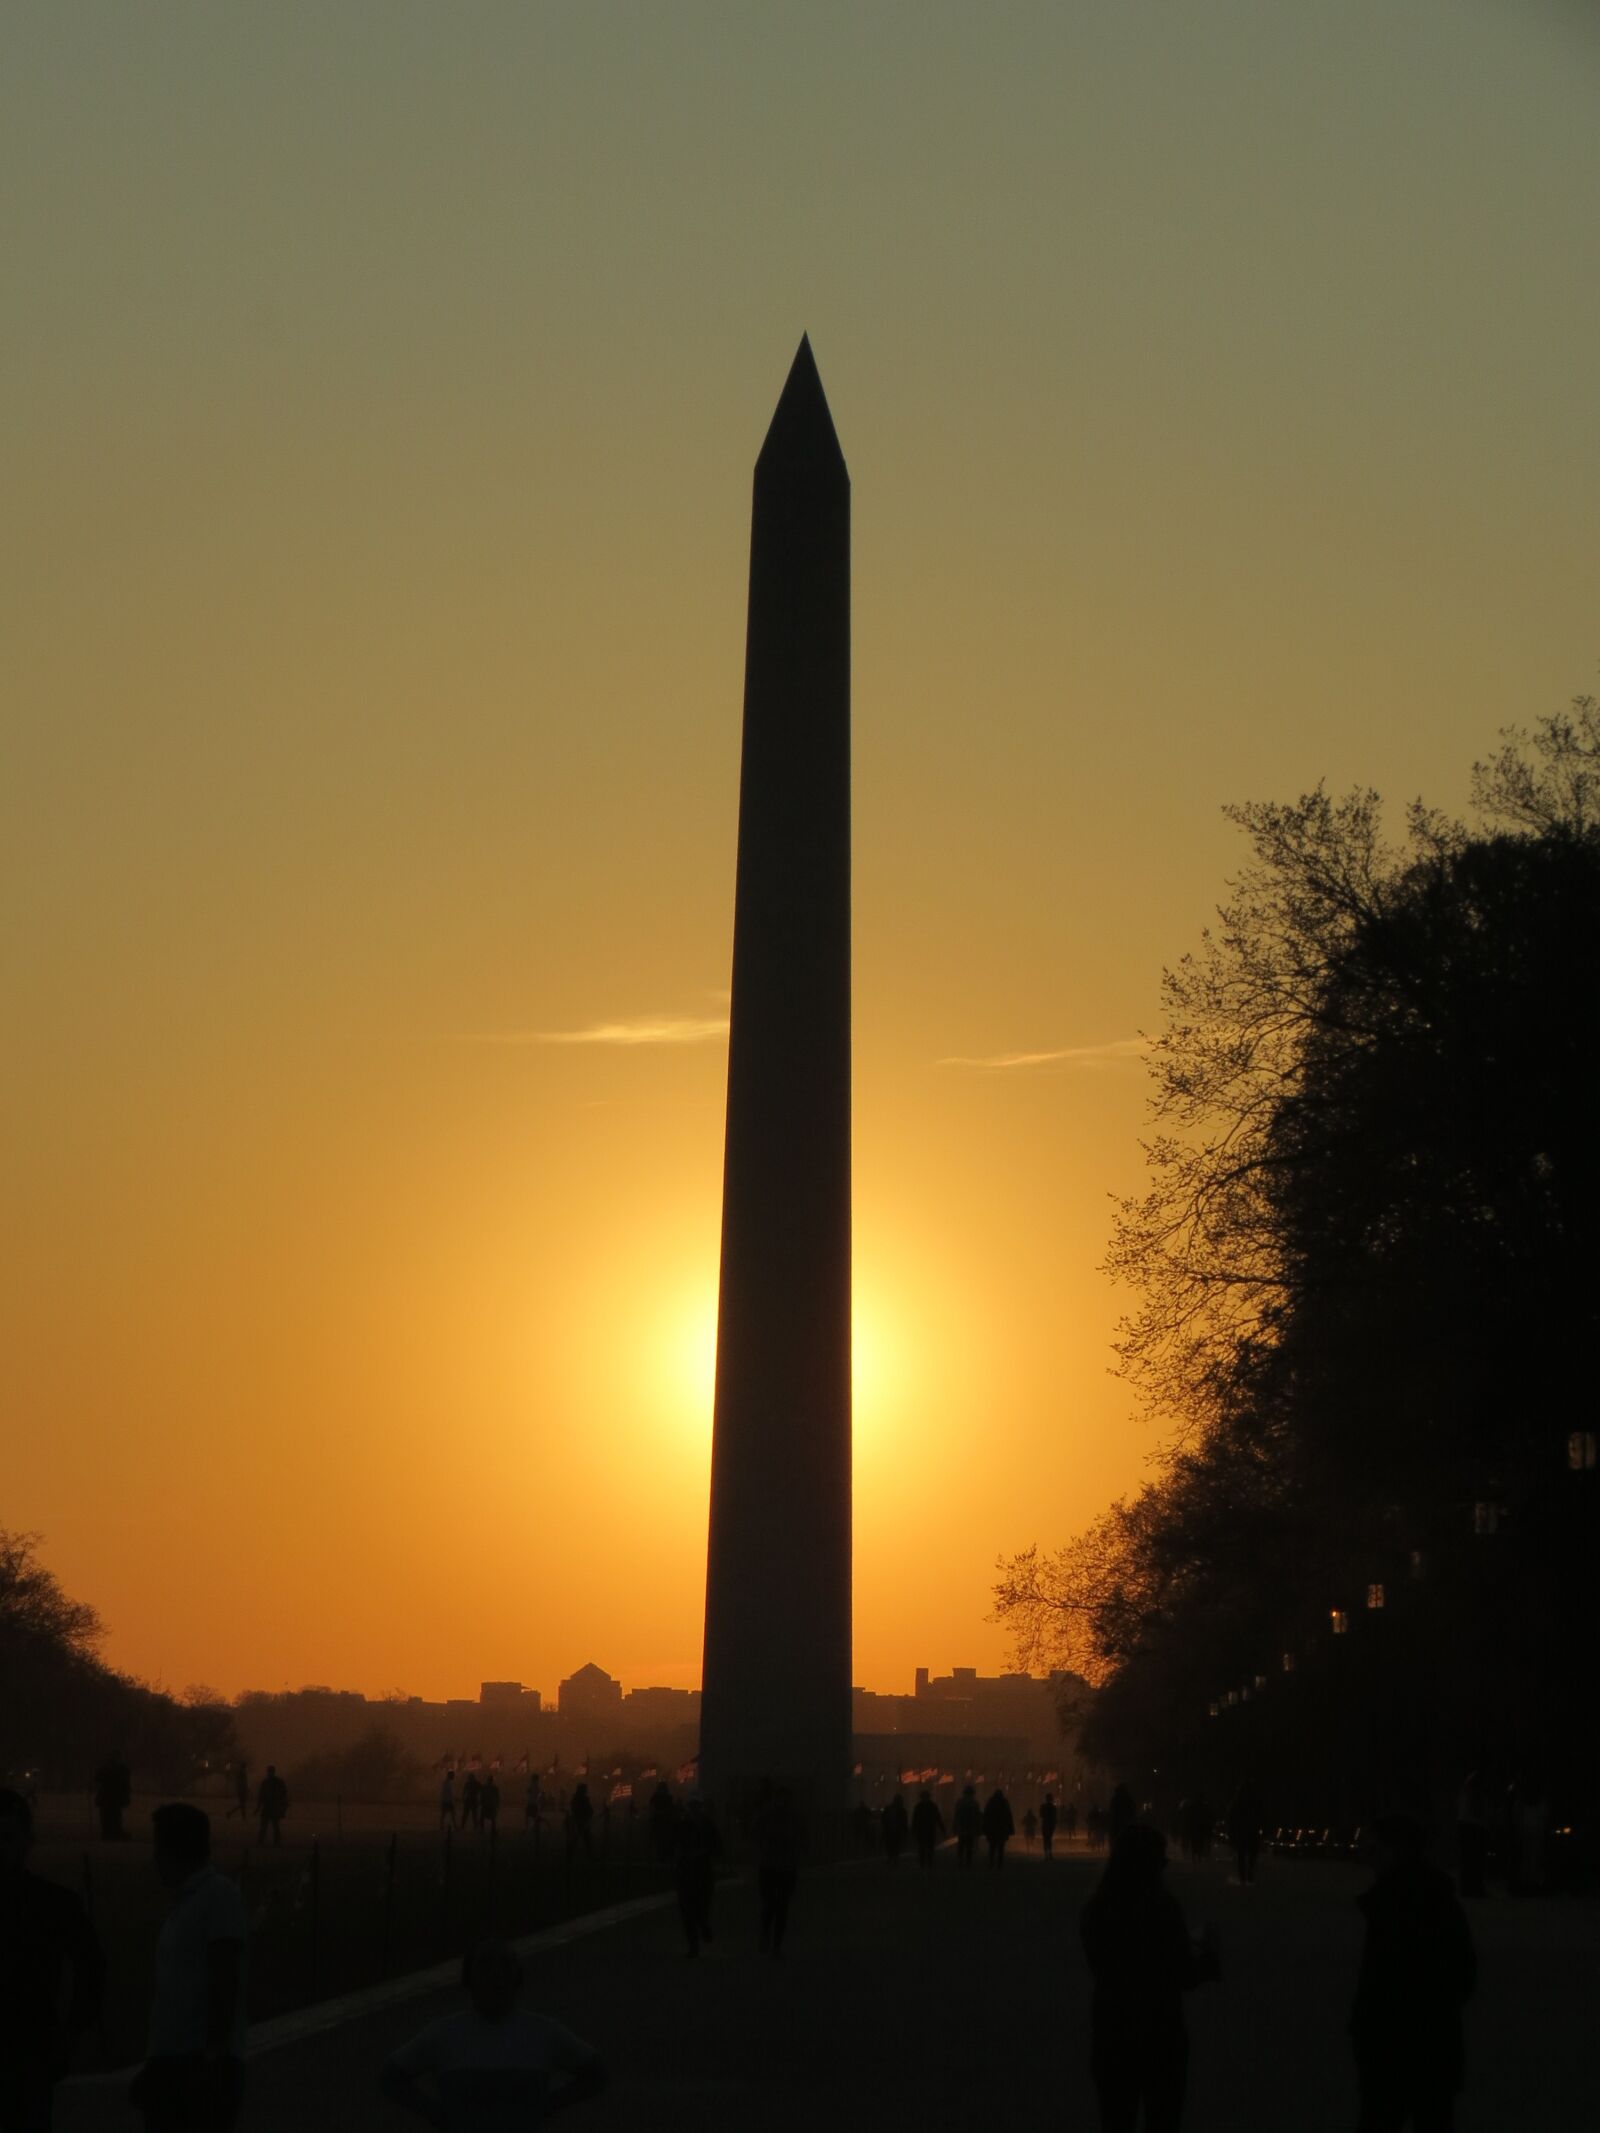 Canon PowerShot SX40 HS sample photo. Washington, sunset, obelisk photography